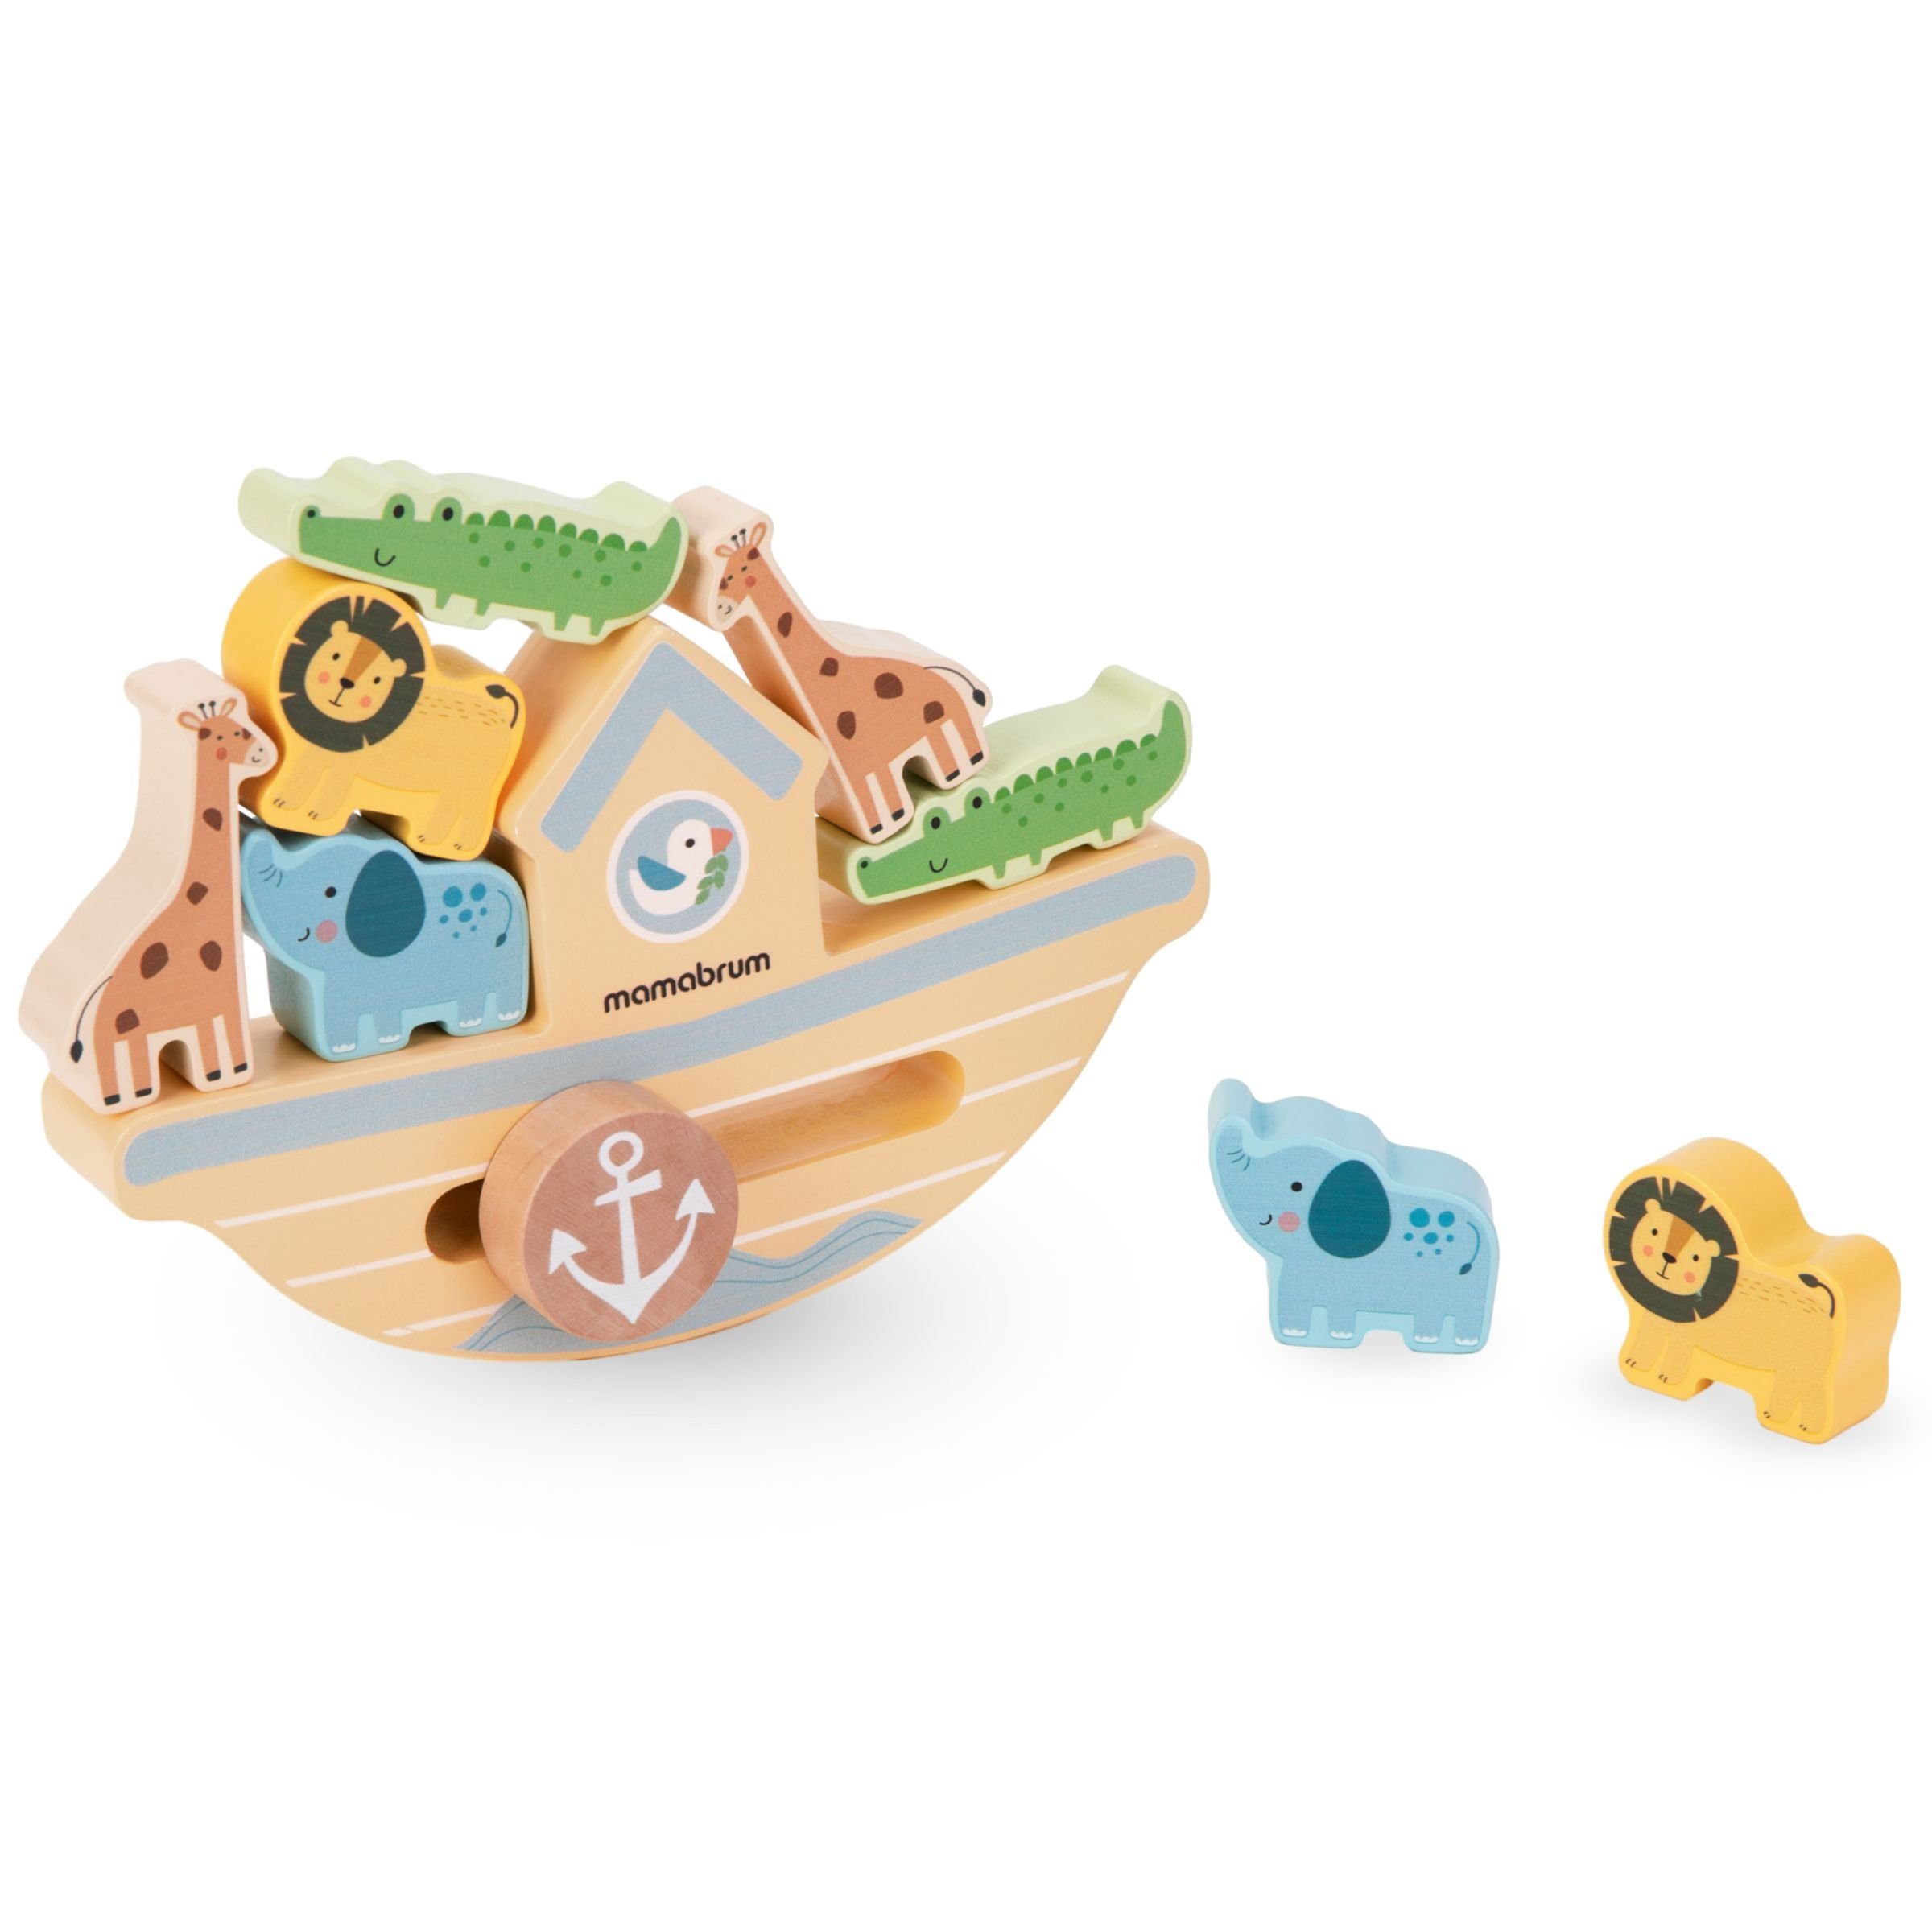 Holz Balancierboot Arkadespiel - Puzzle-Sortierschale aus Mamabrum